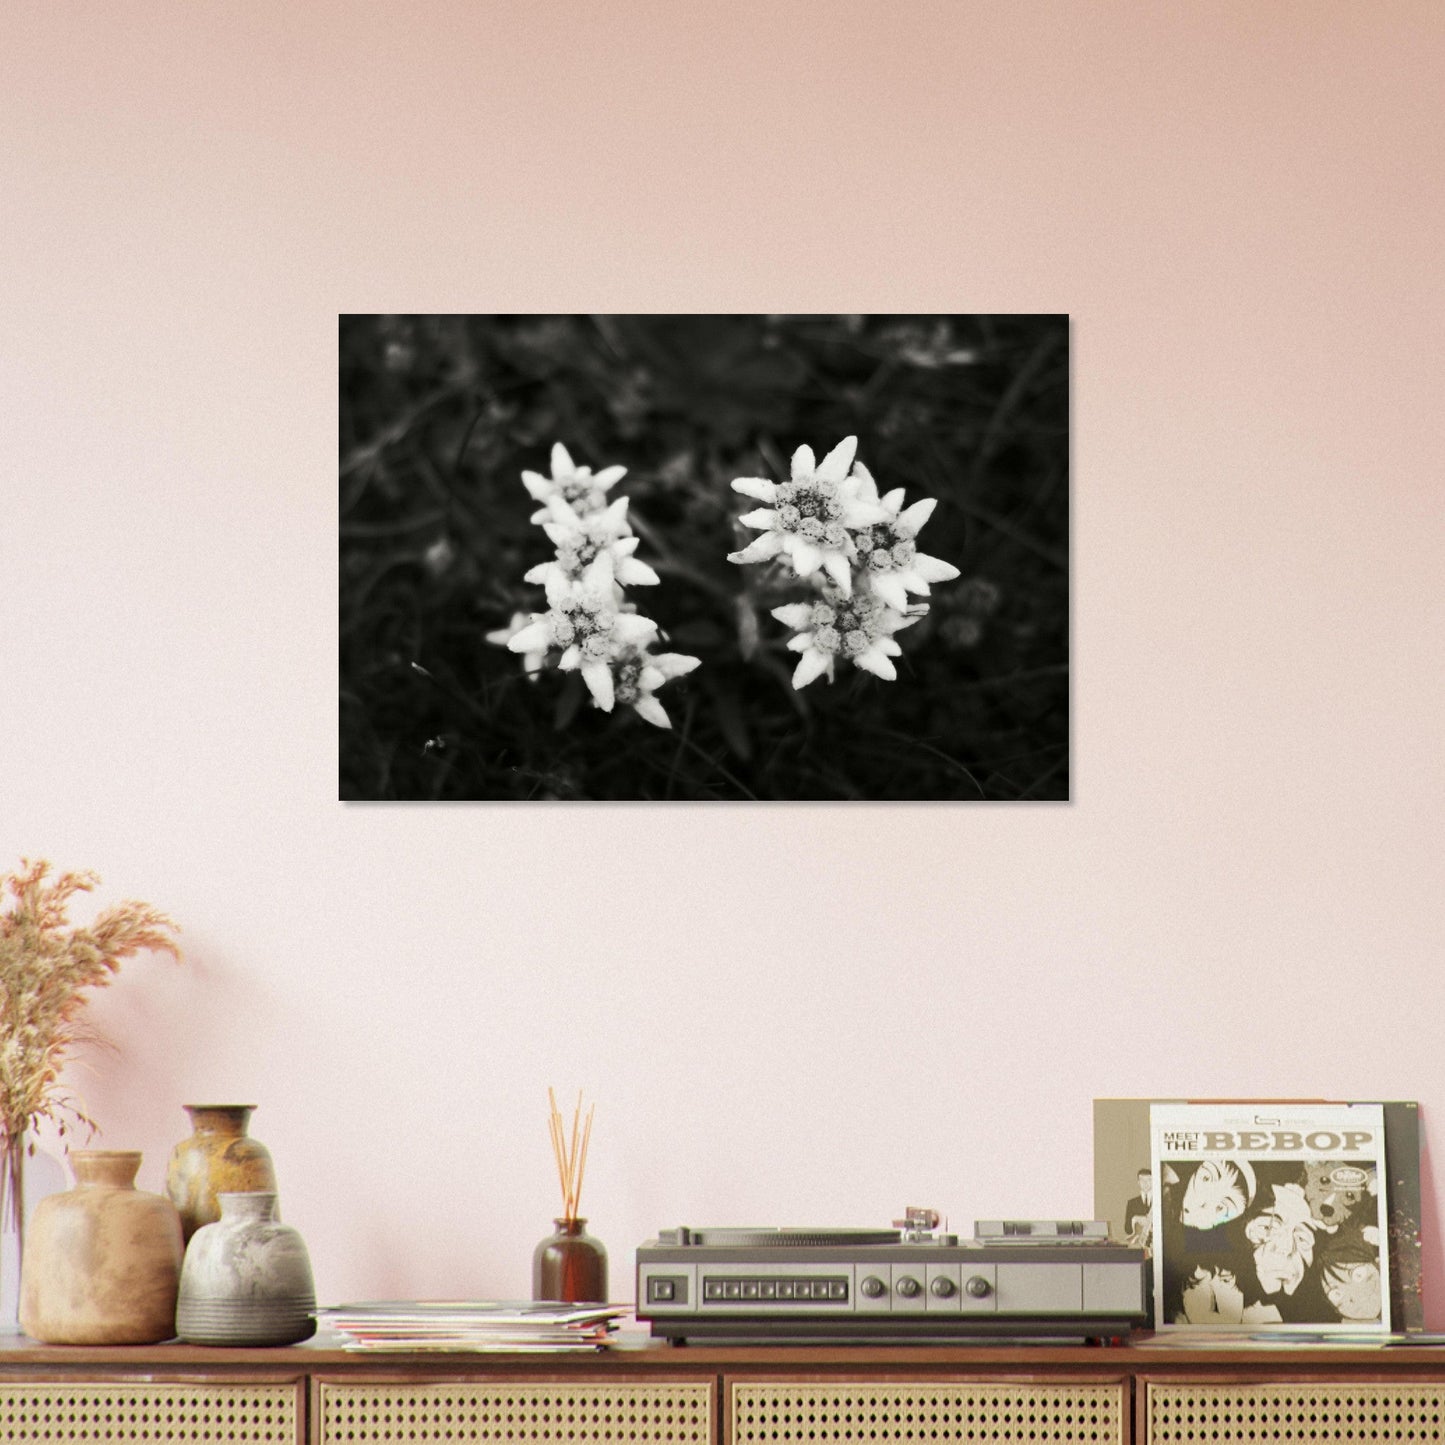 Vente Photo Edelweiss, fleur de montagne #3 - Tableau photo paysage